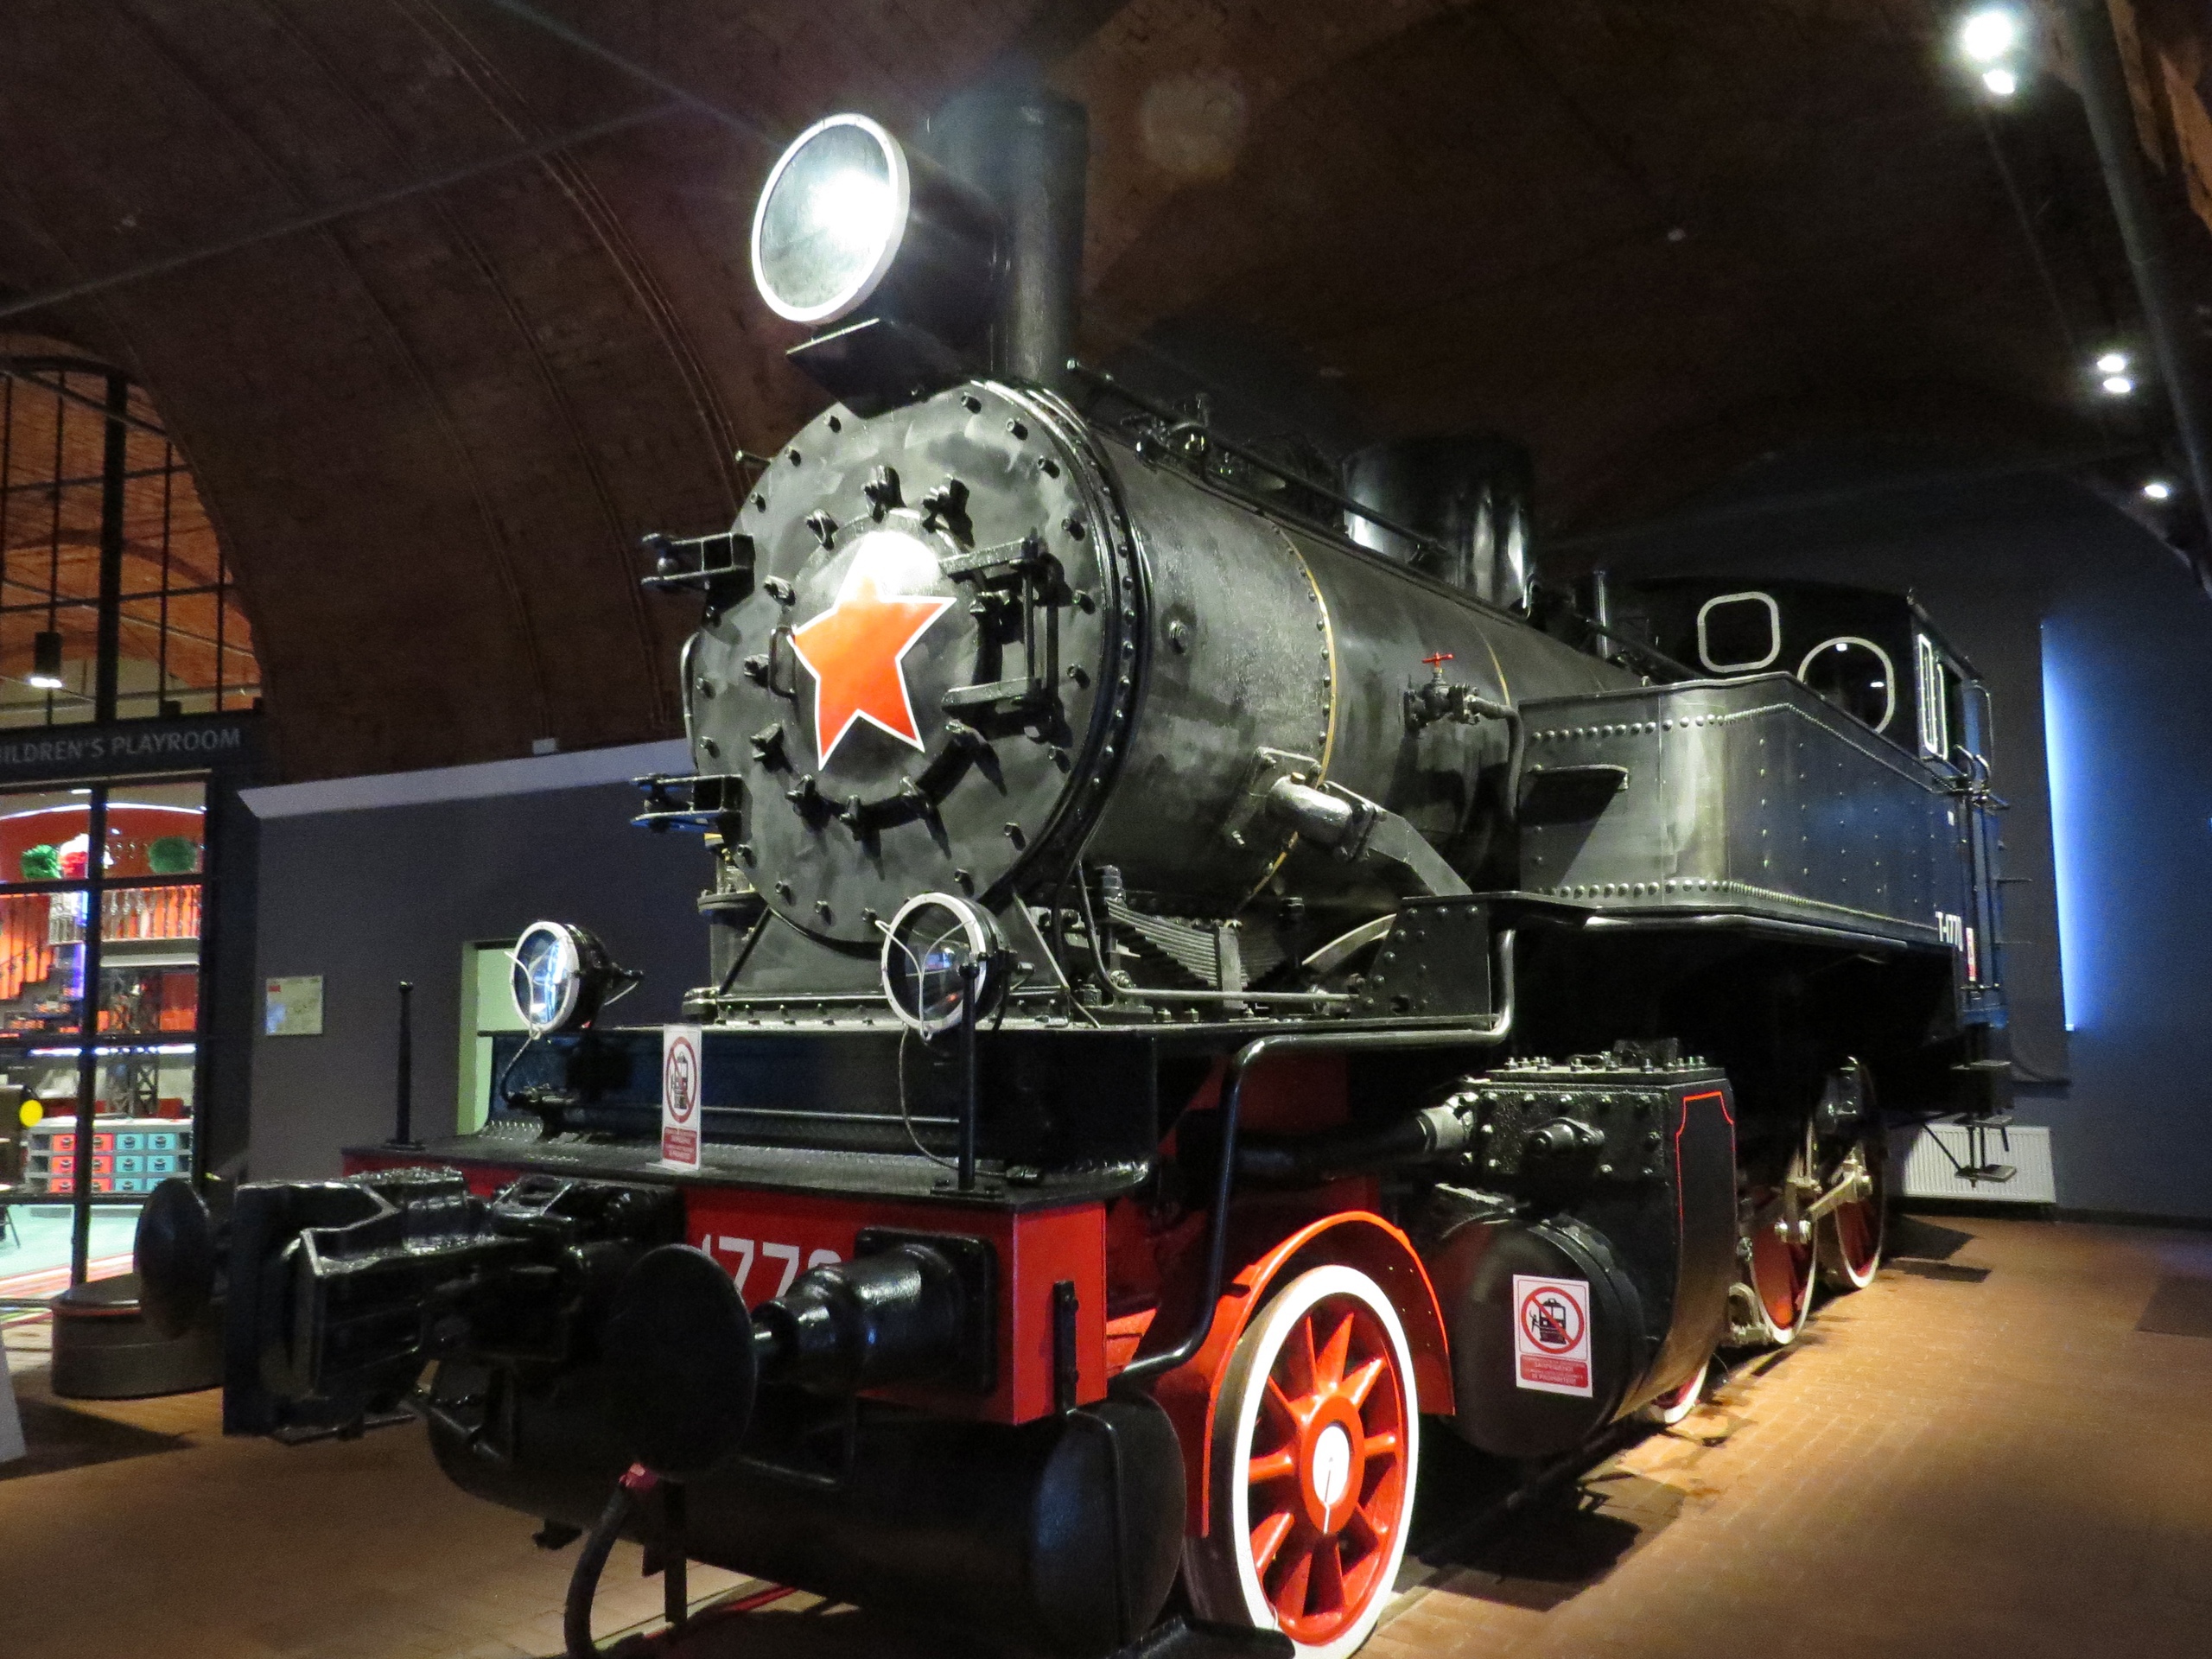 10 музеев - Музей железных дорог России 